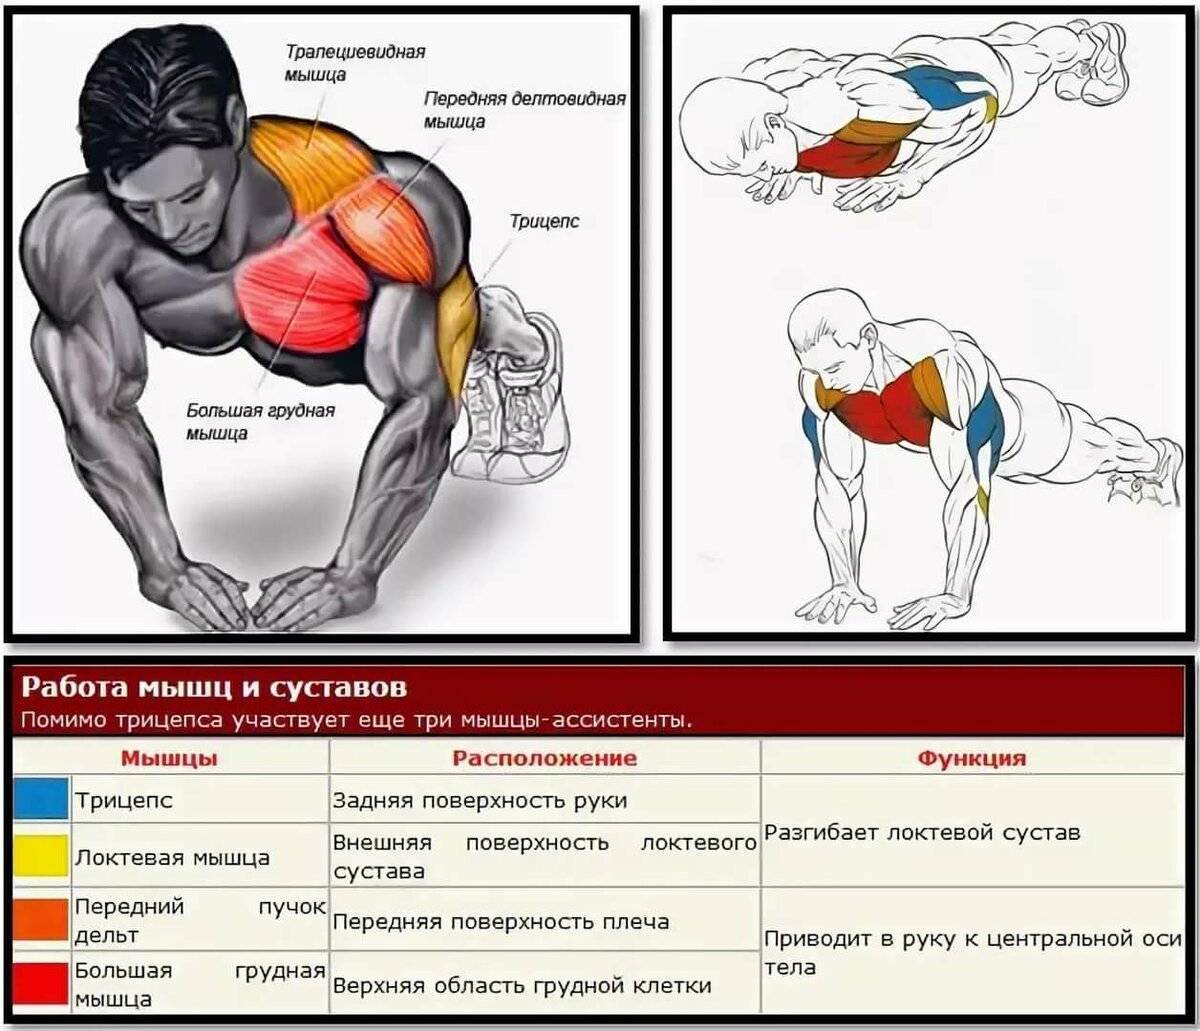 Упражнения и мышцы.